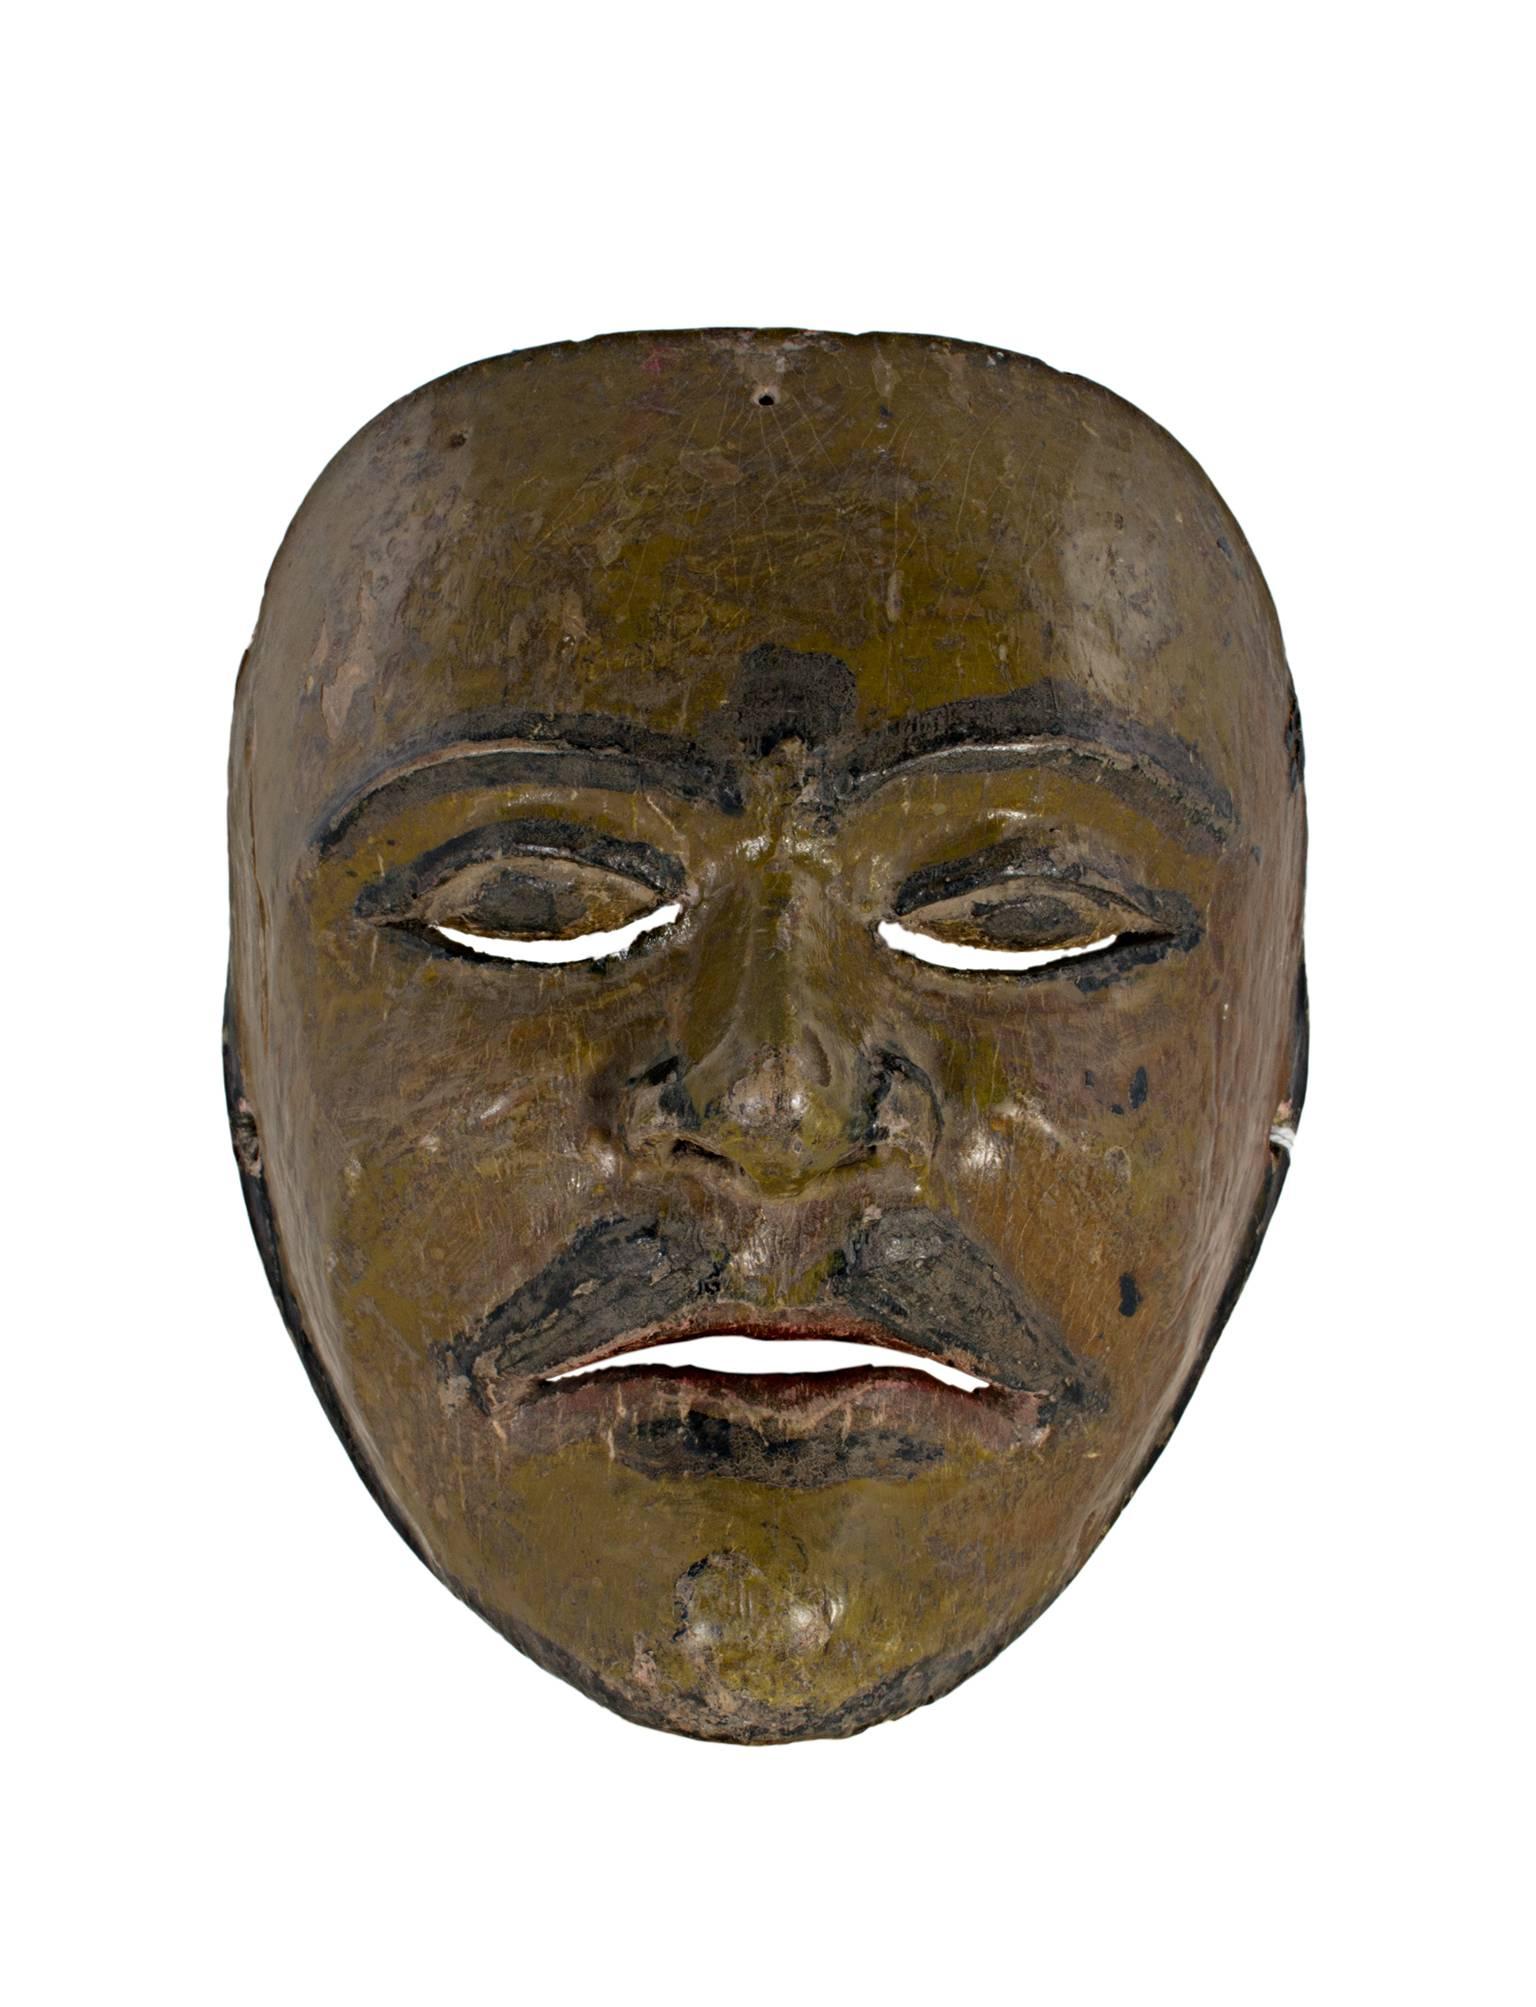 „Indonesische Maske eines Western-Charakters, „Erdänische Senf-, Limonen- und Grünfarbene Holzmaske